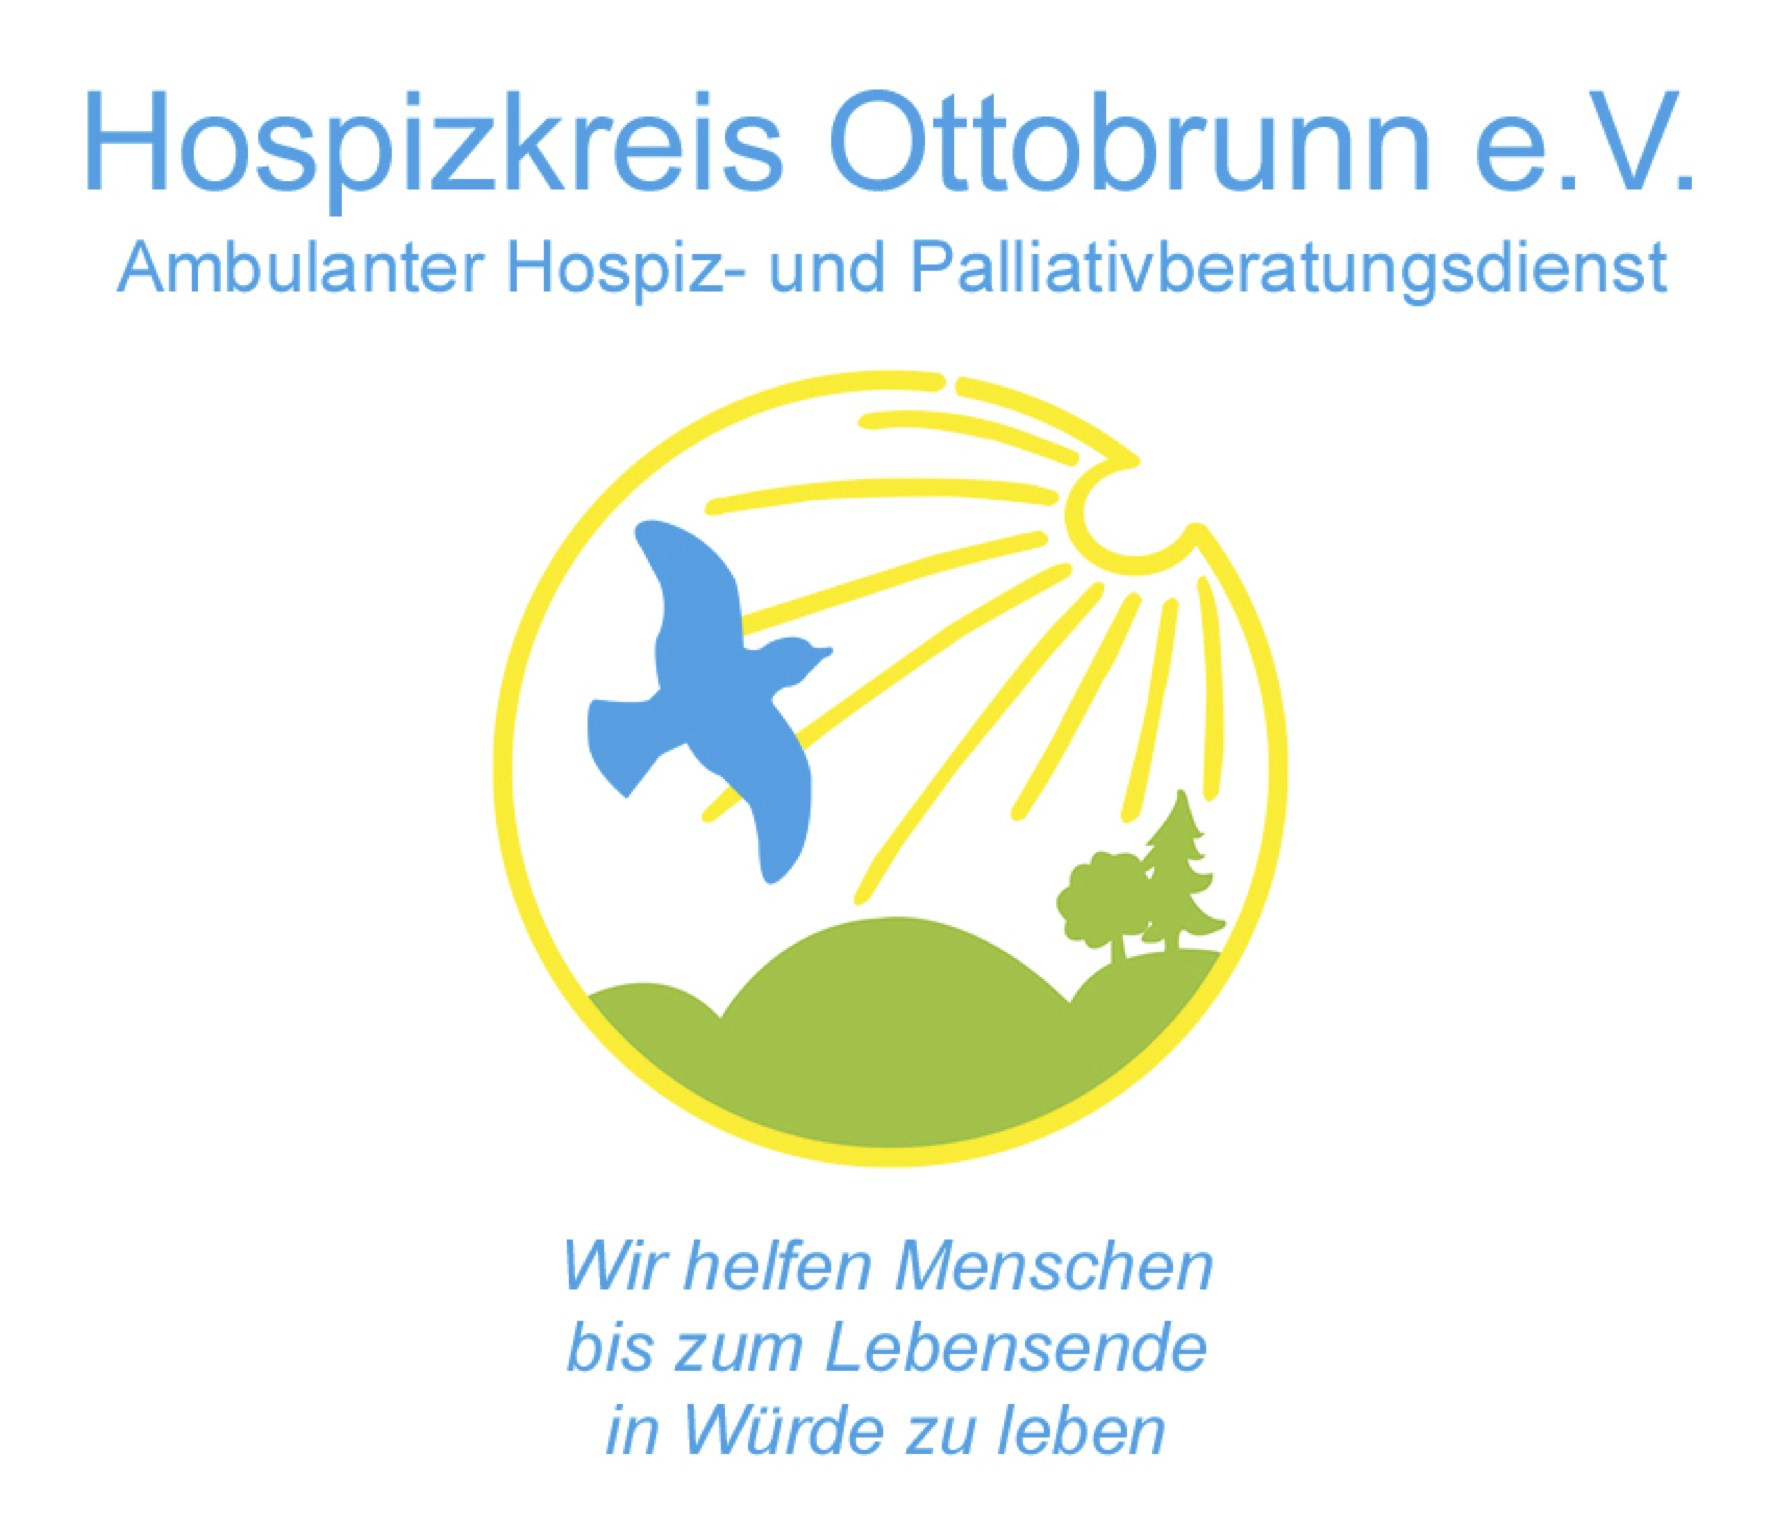 Der Hospizkreis Ottobrunn stellt sich vor